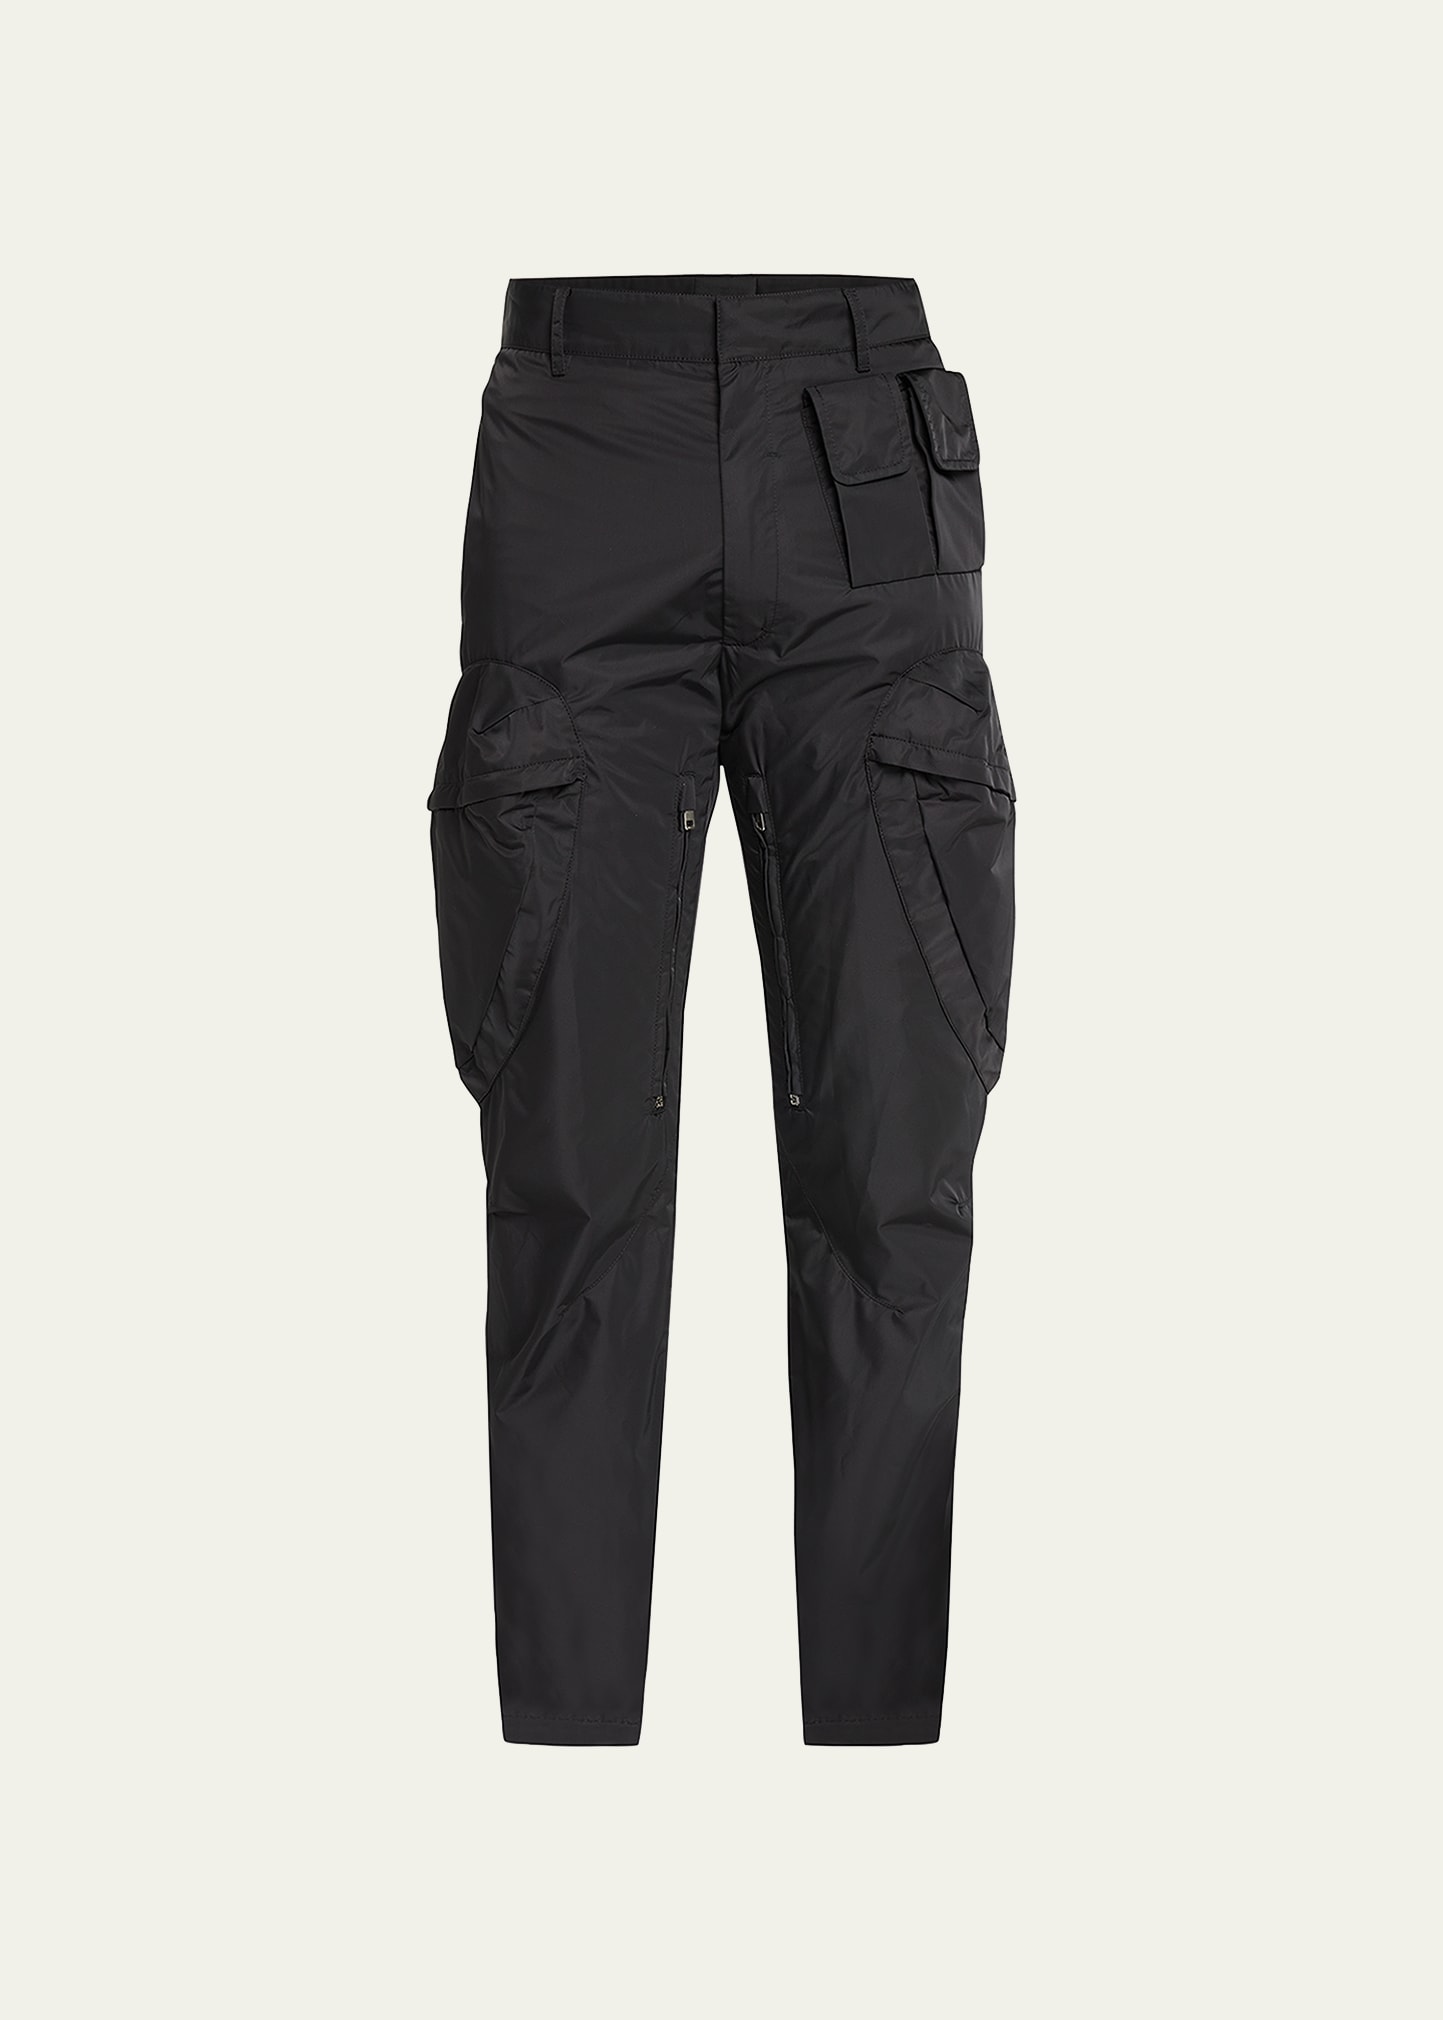 Givenchy Men's Slim Multi-pocket Cargo Pants In Black